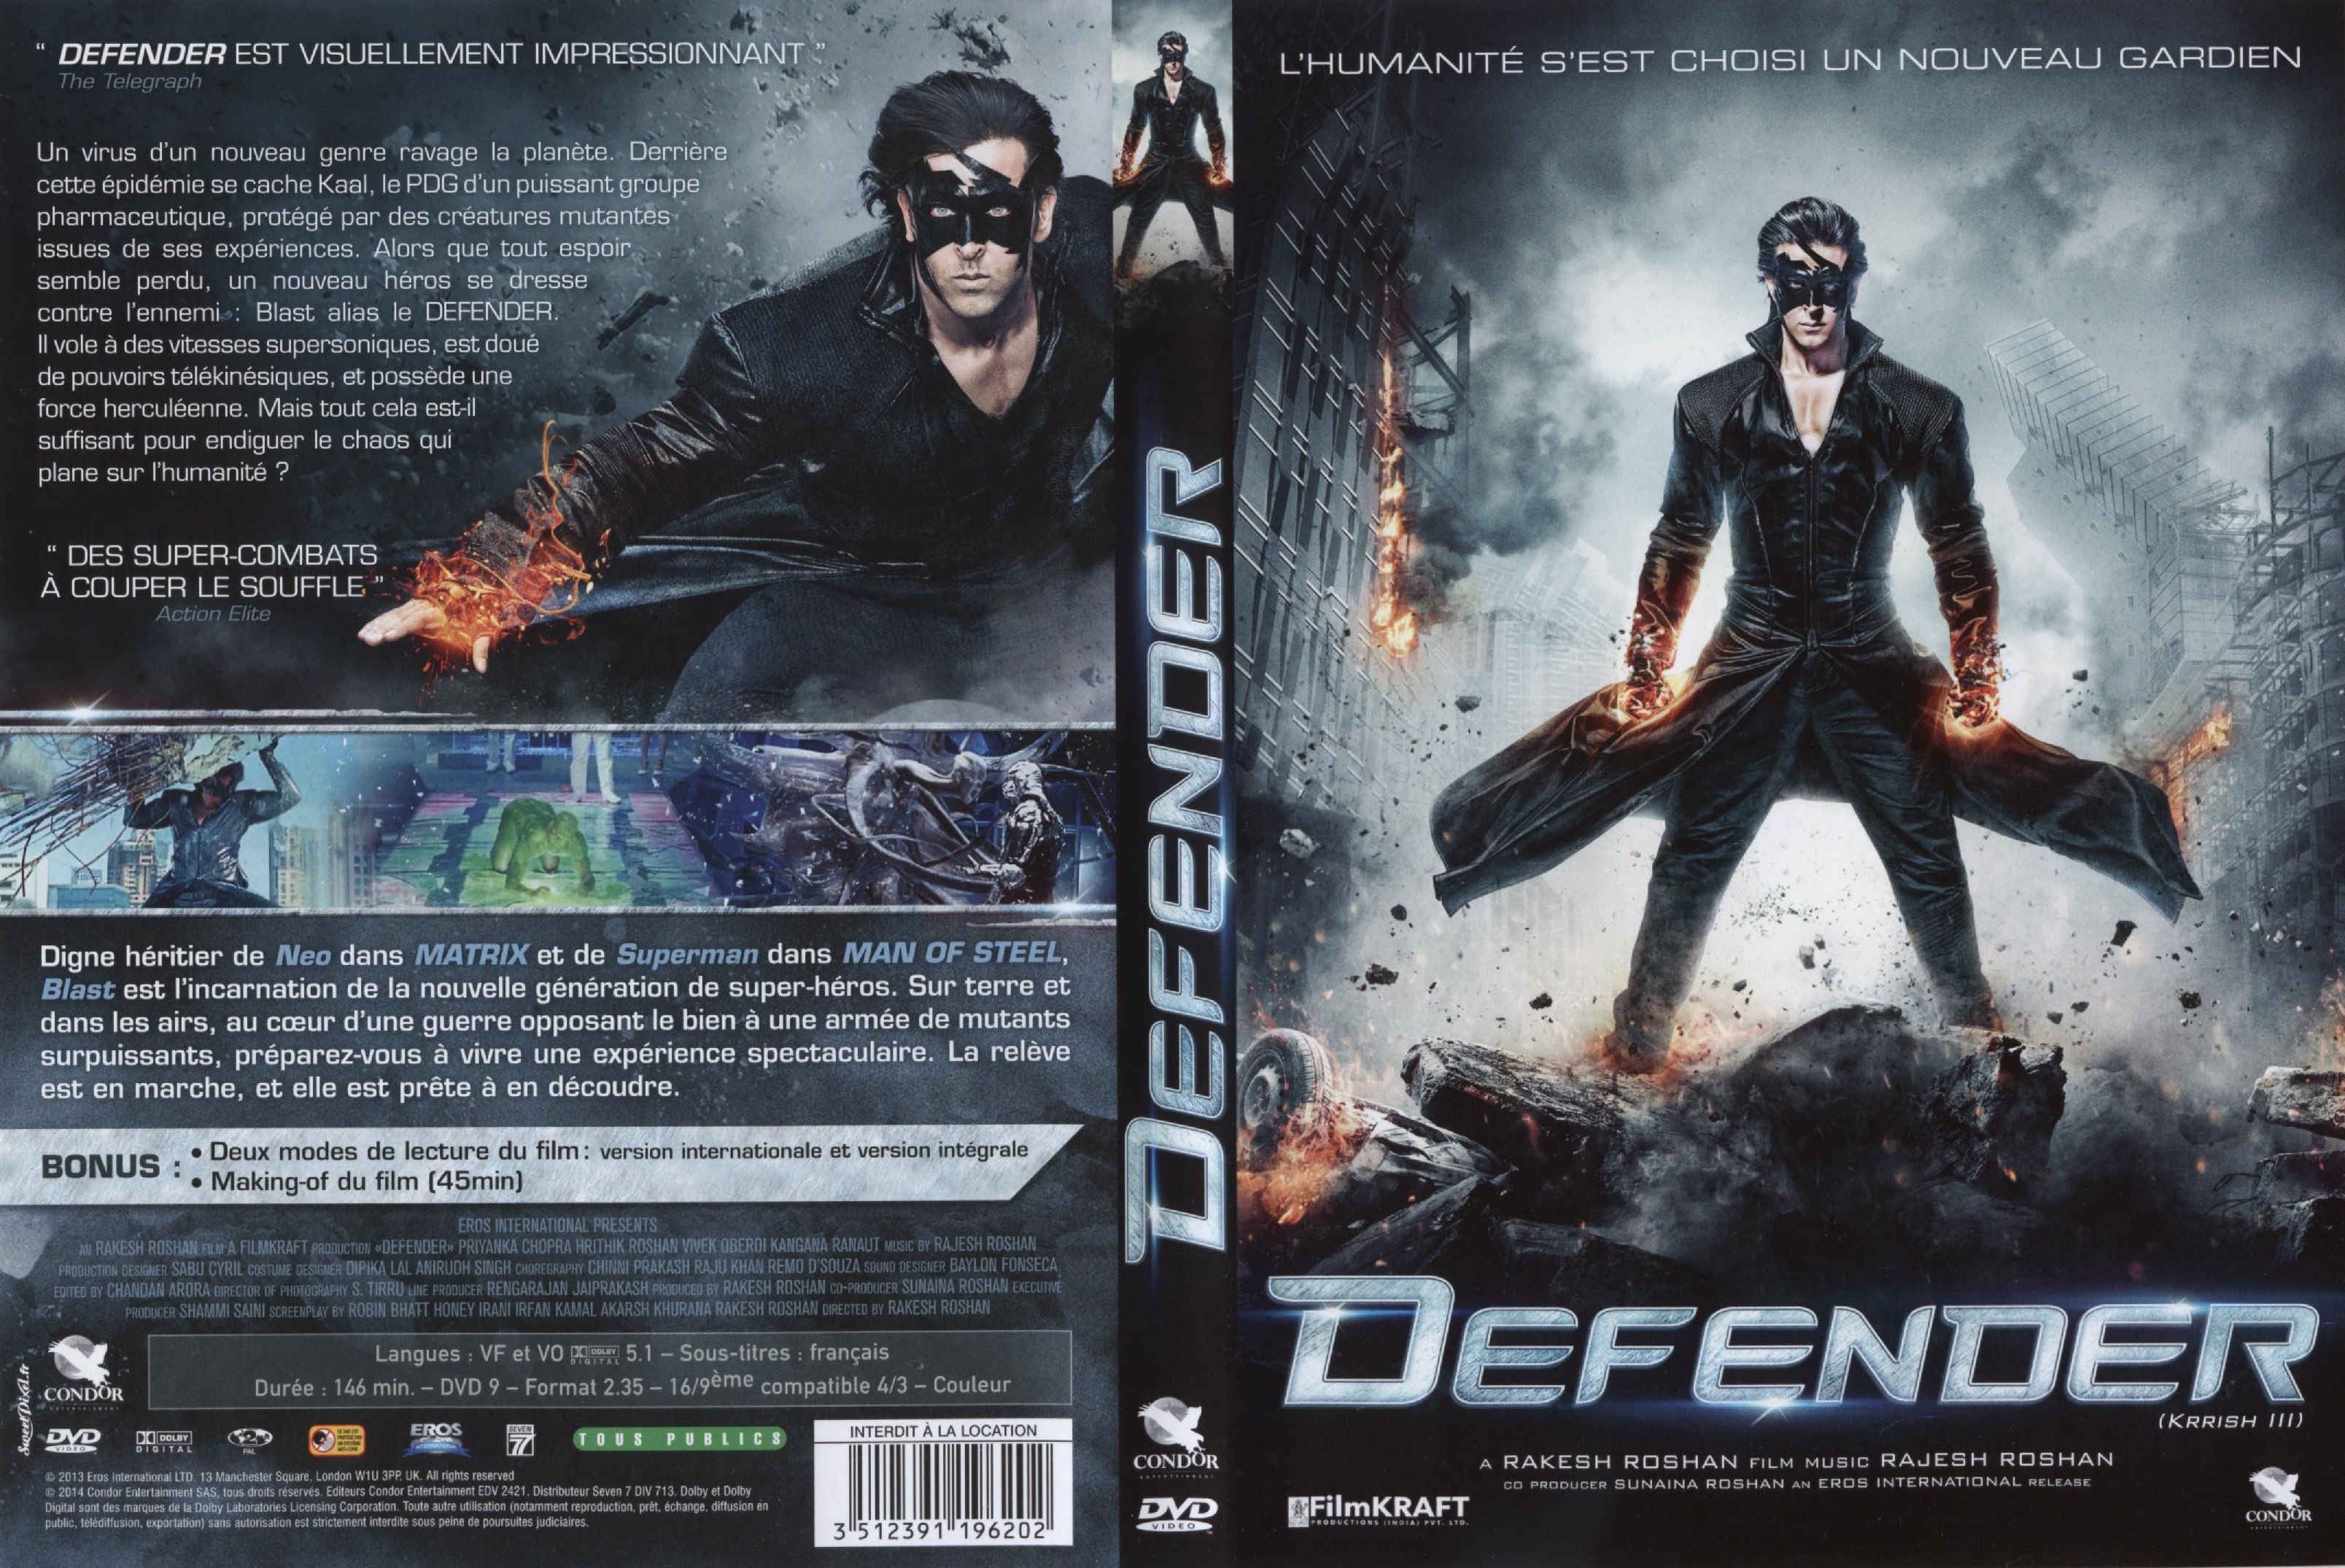 Jaquette DVD Defender